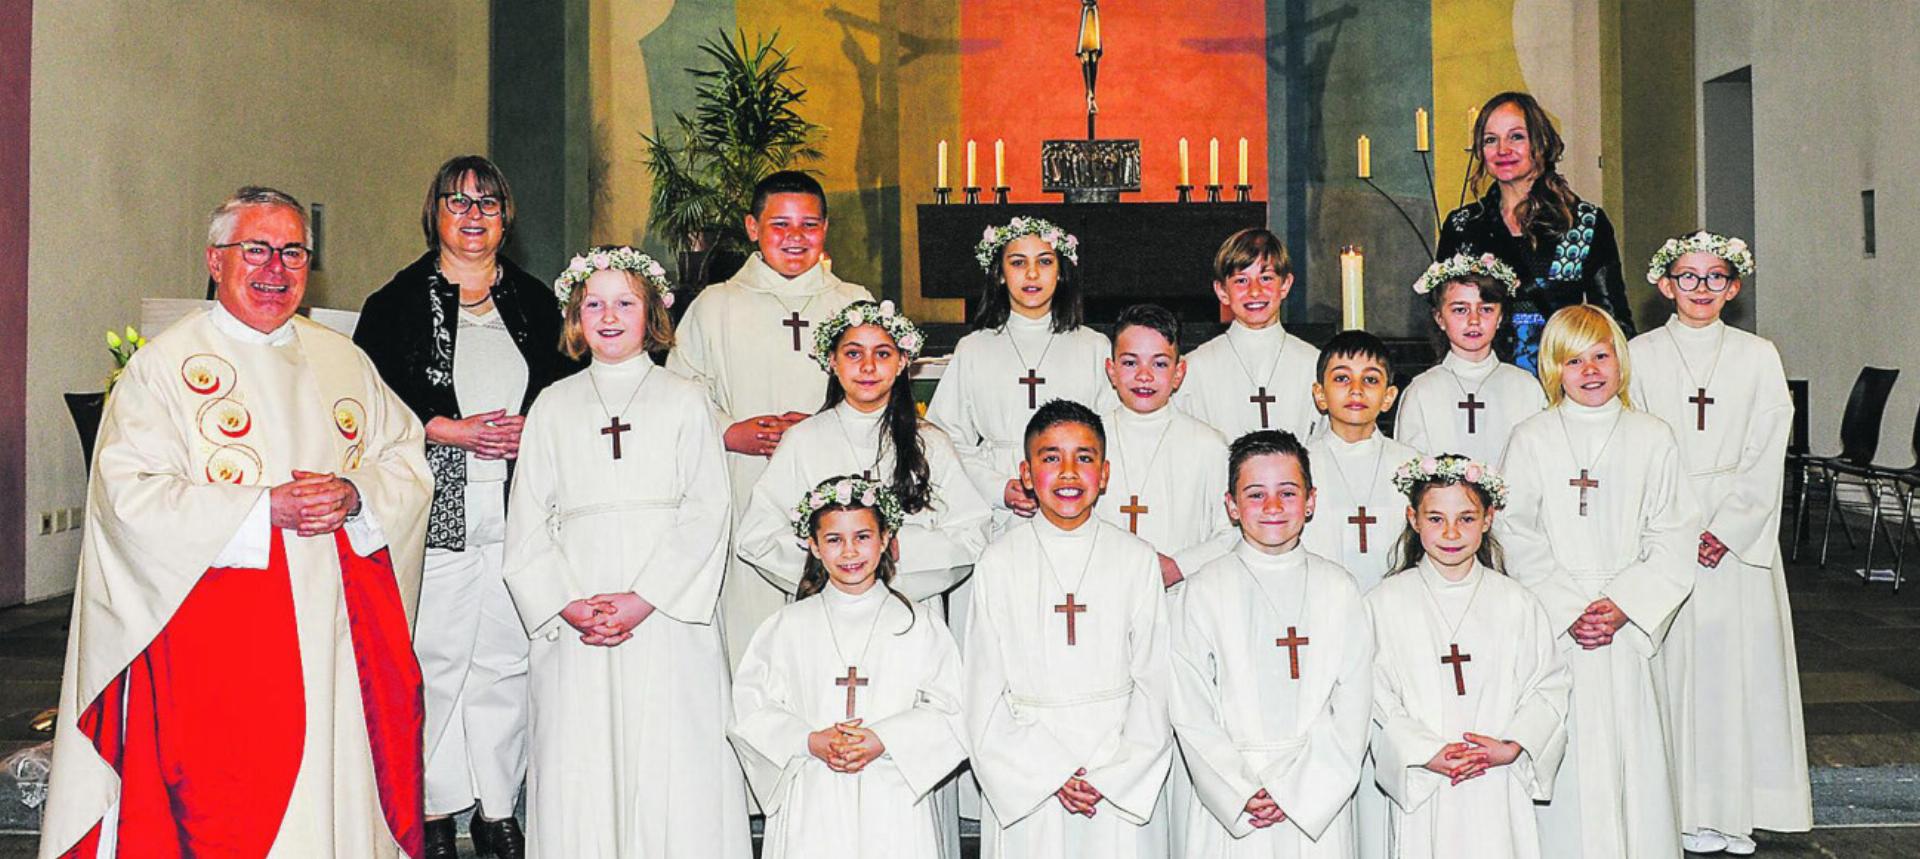 14 Kinder feierten ihre erste heilige Kommunion. Bild: zvg